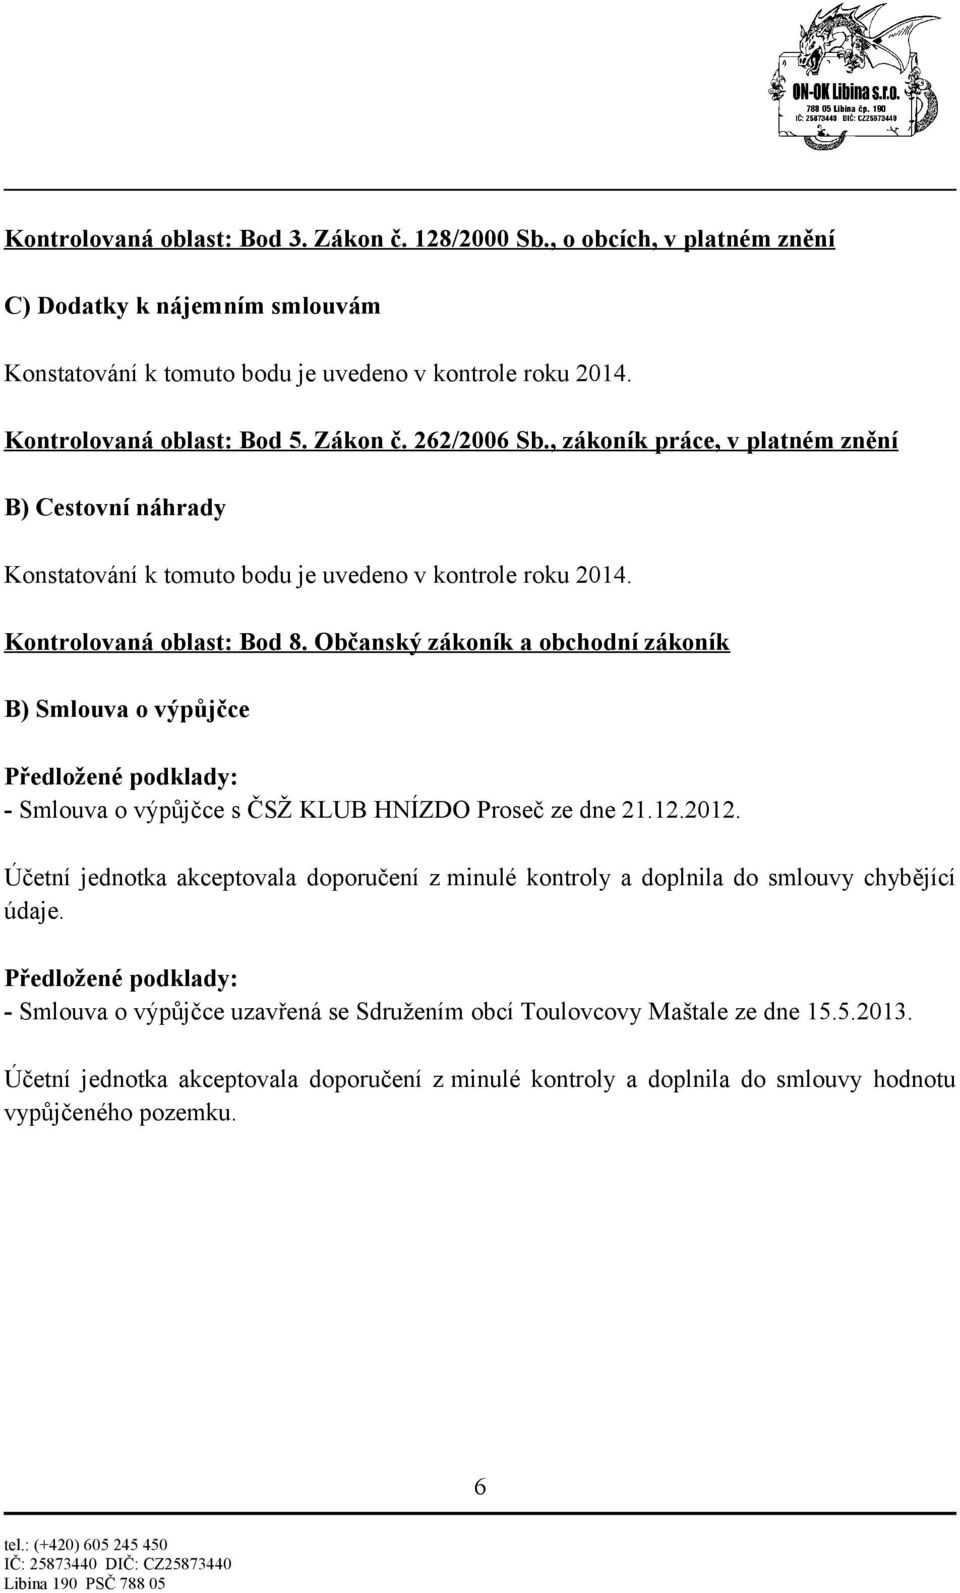 Občanský zákoník a obchodní zákoník B) Smlouva o výpůjčce - Smlouva o výpůjčce s ČSŽ KLUB HNÍZDO Proseč ze dne 21.12.2012.